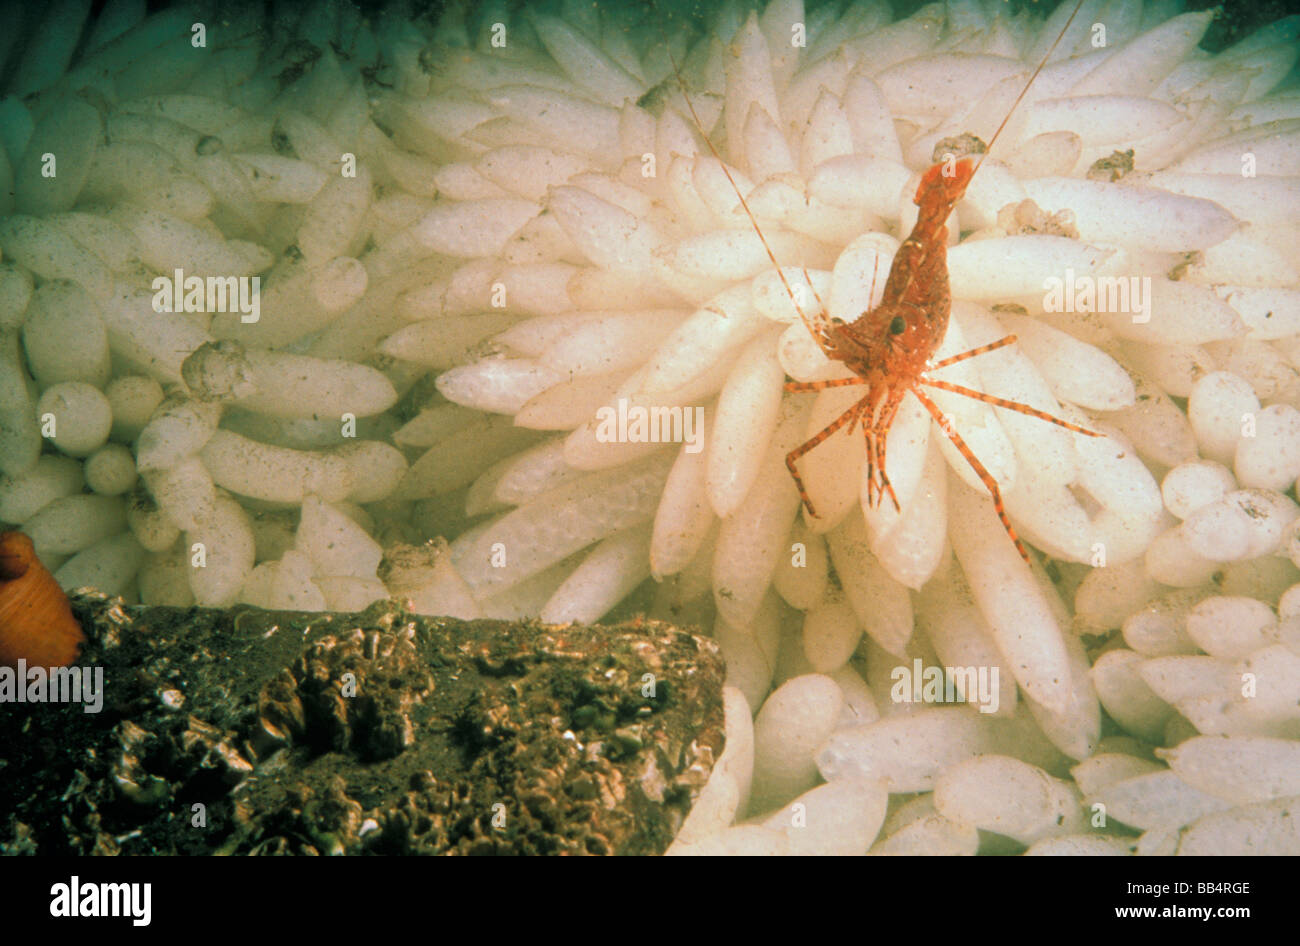 USA, Washington, Puget Sound. Large shrimp feeding on squid eggs. Stock Photo